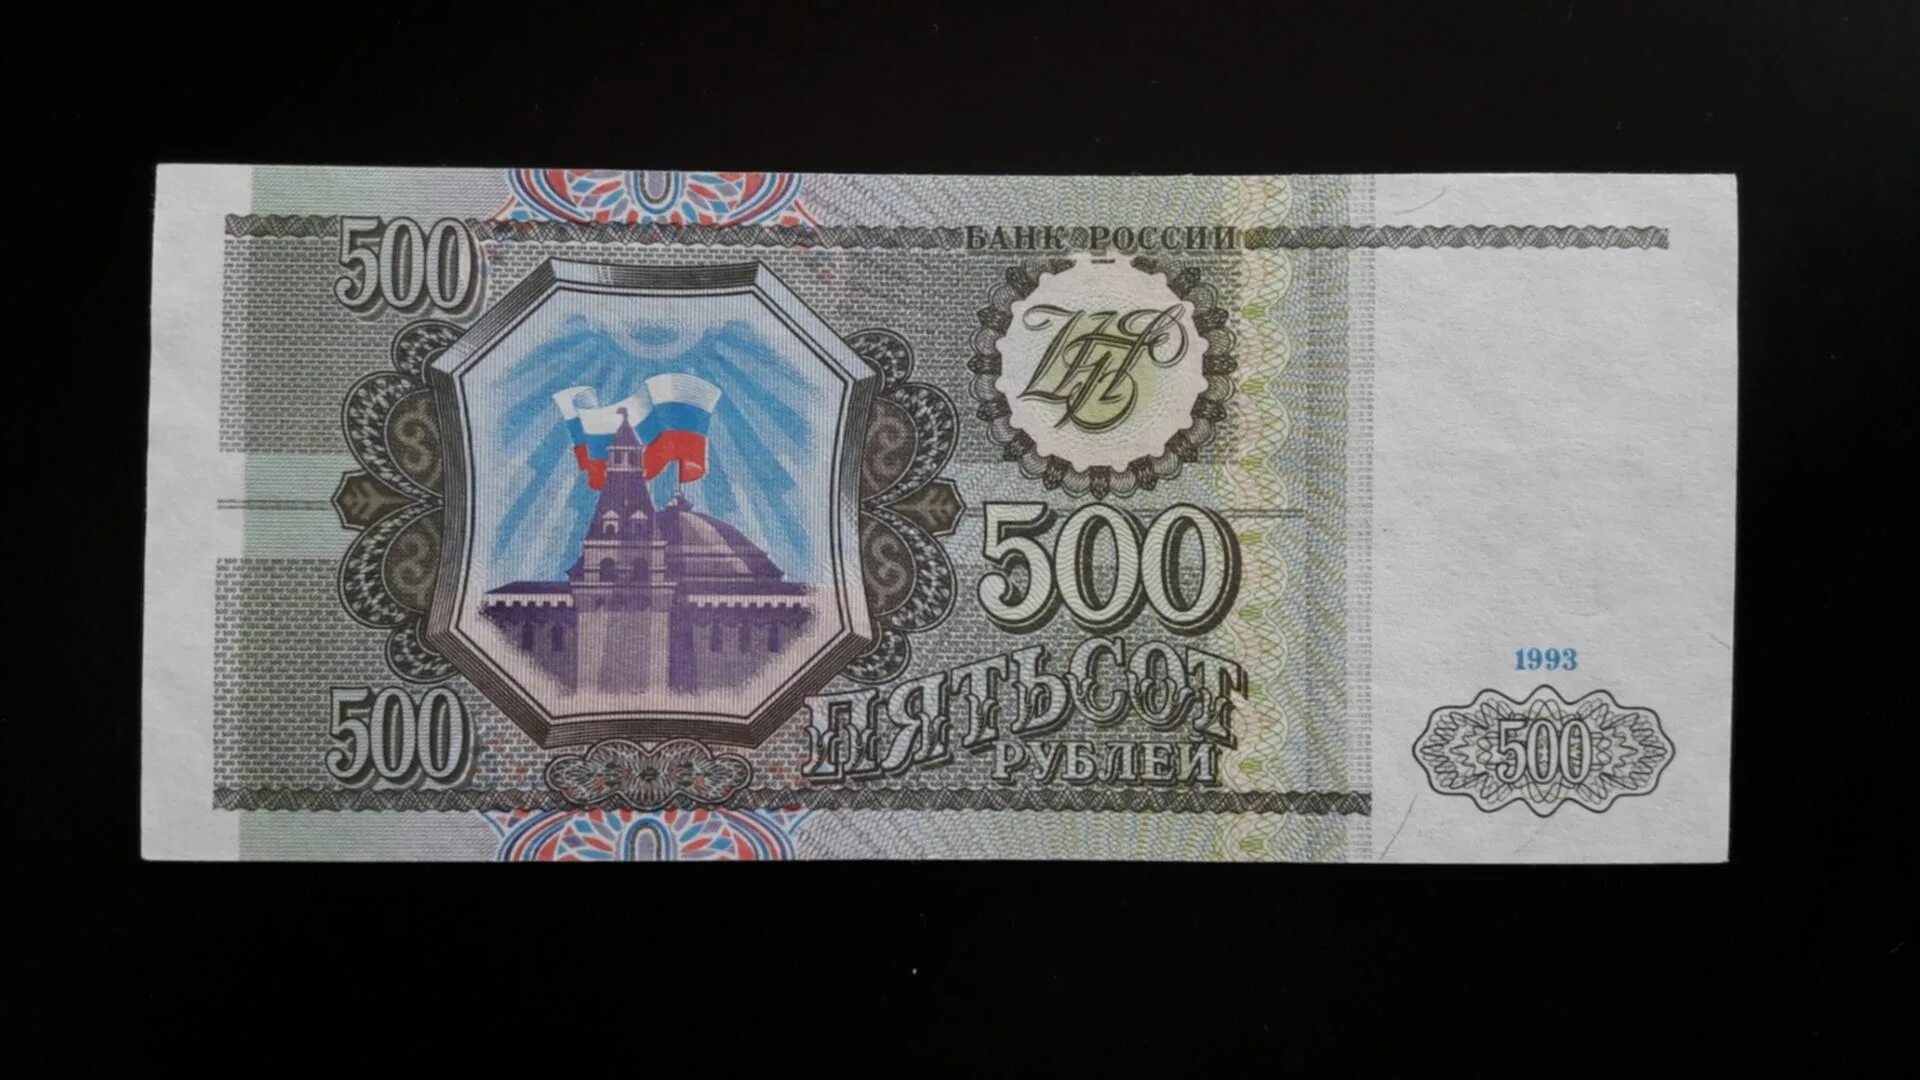 Нескольких сот рублей. 500 Рублей 1993 года. Купюры 100, 200, 500 рублей 1993 года. Банкноты России 1993 года. Деньги купюры 1993.